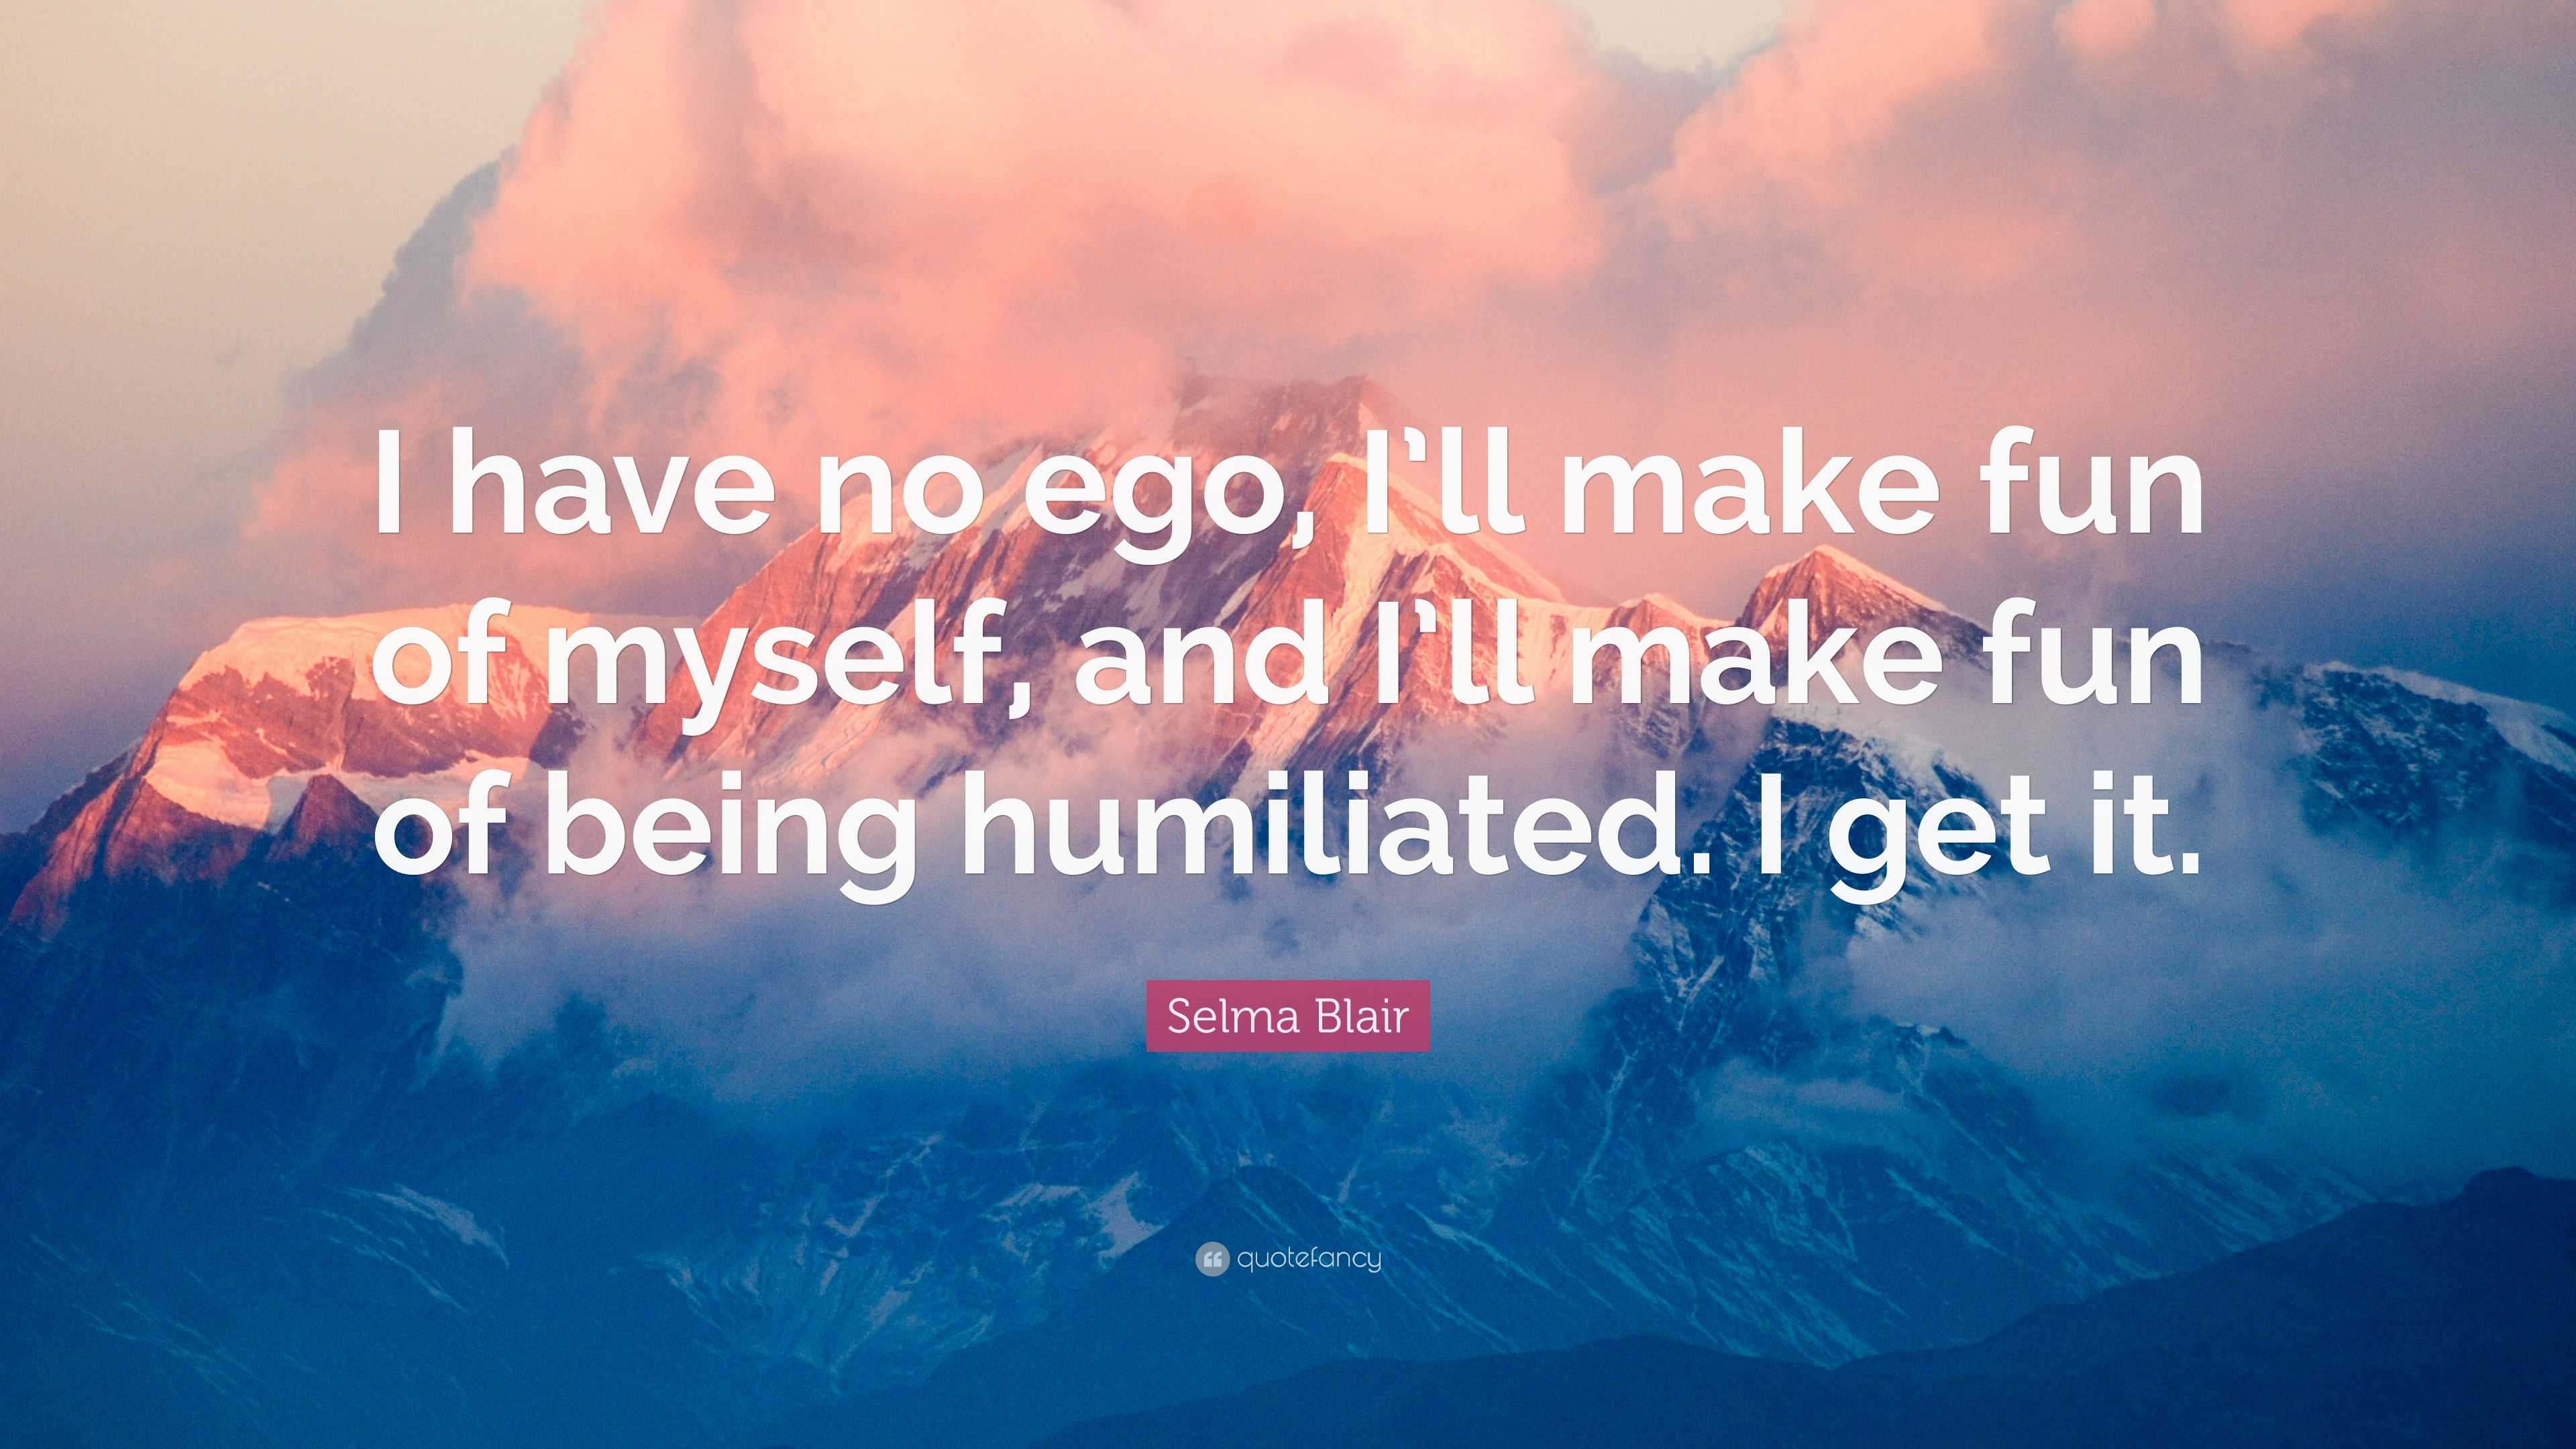 Selma Blair Quote “I have no ego I ll make fun of